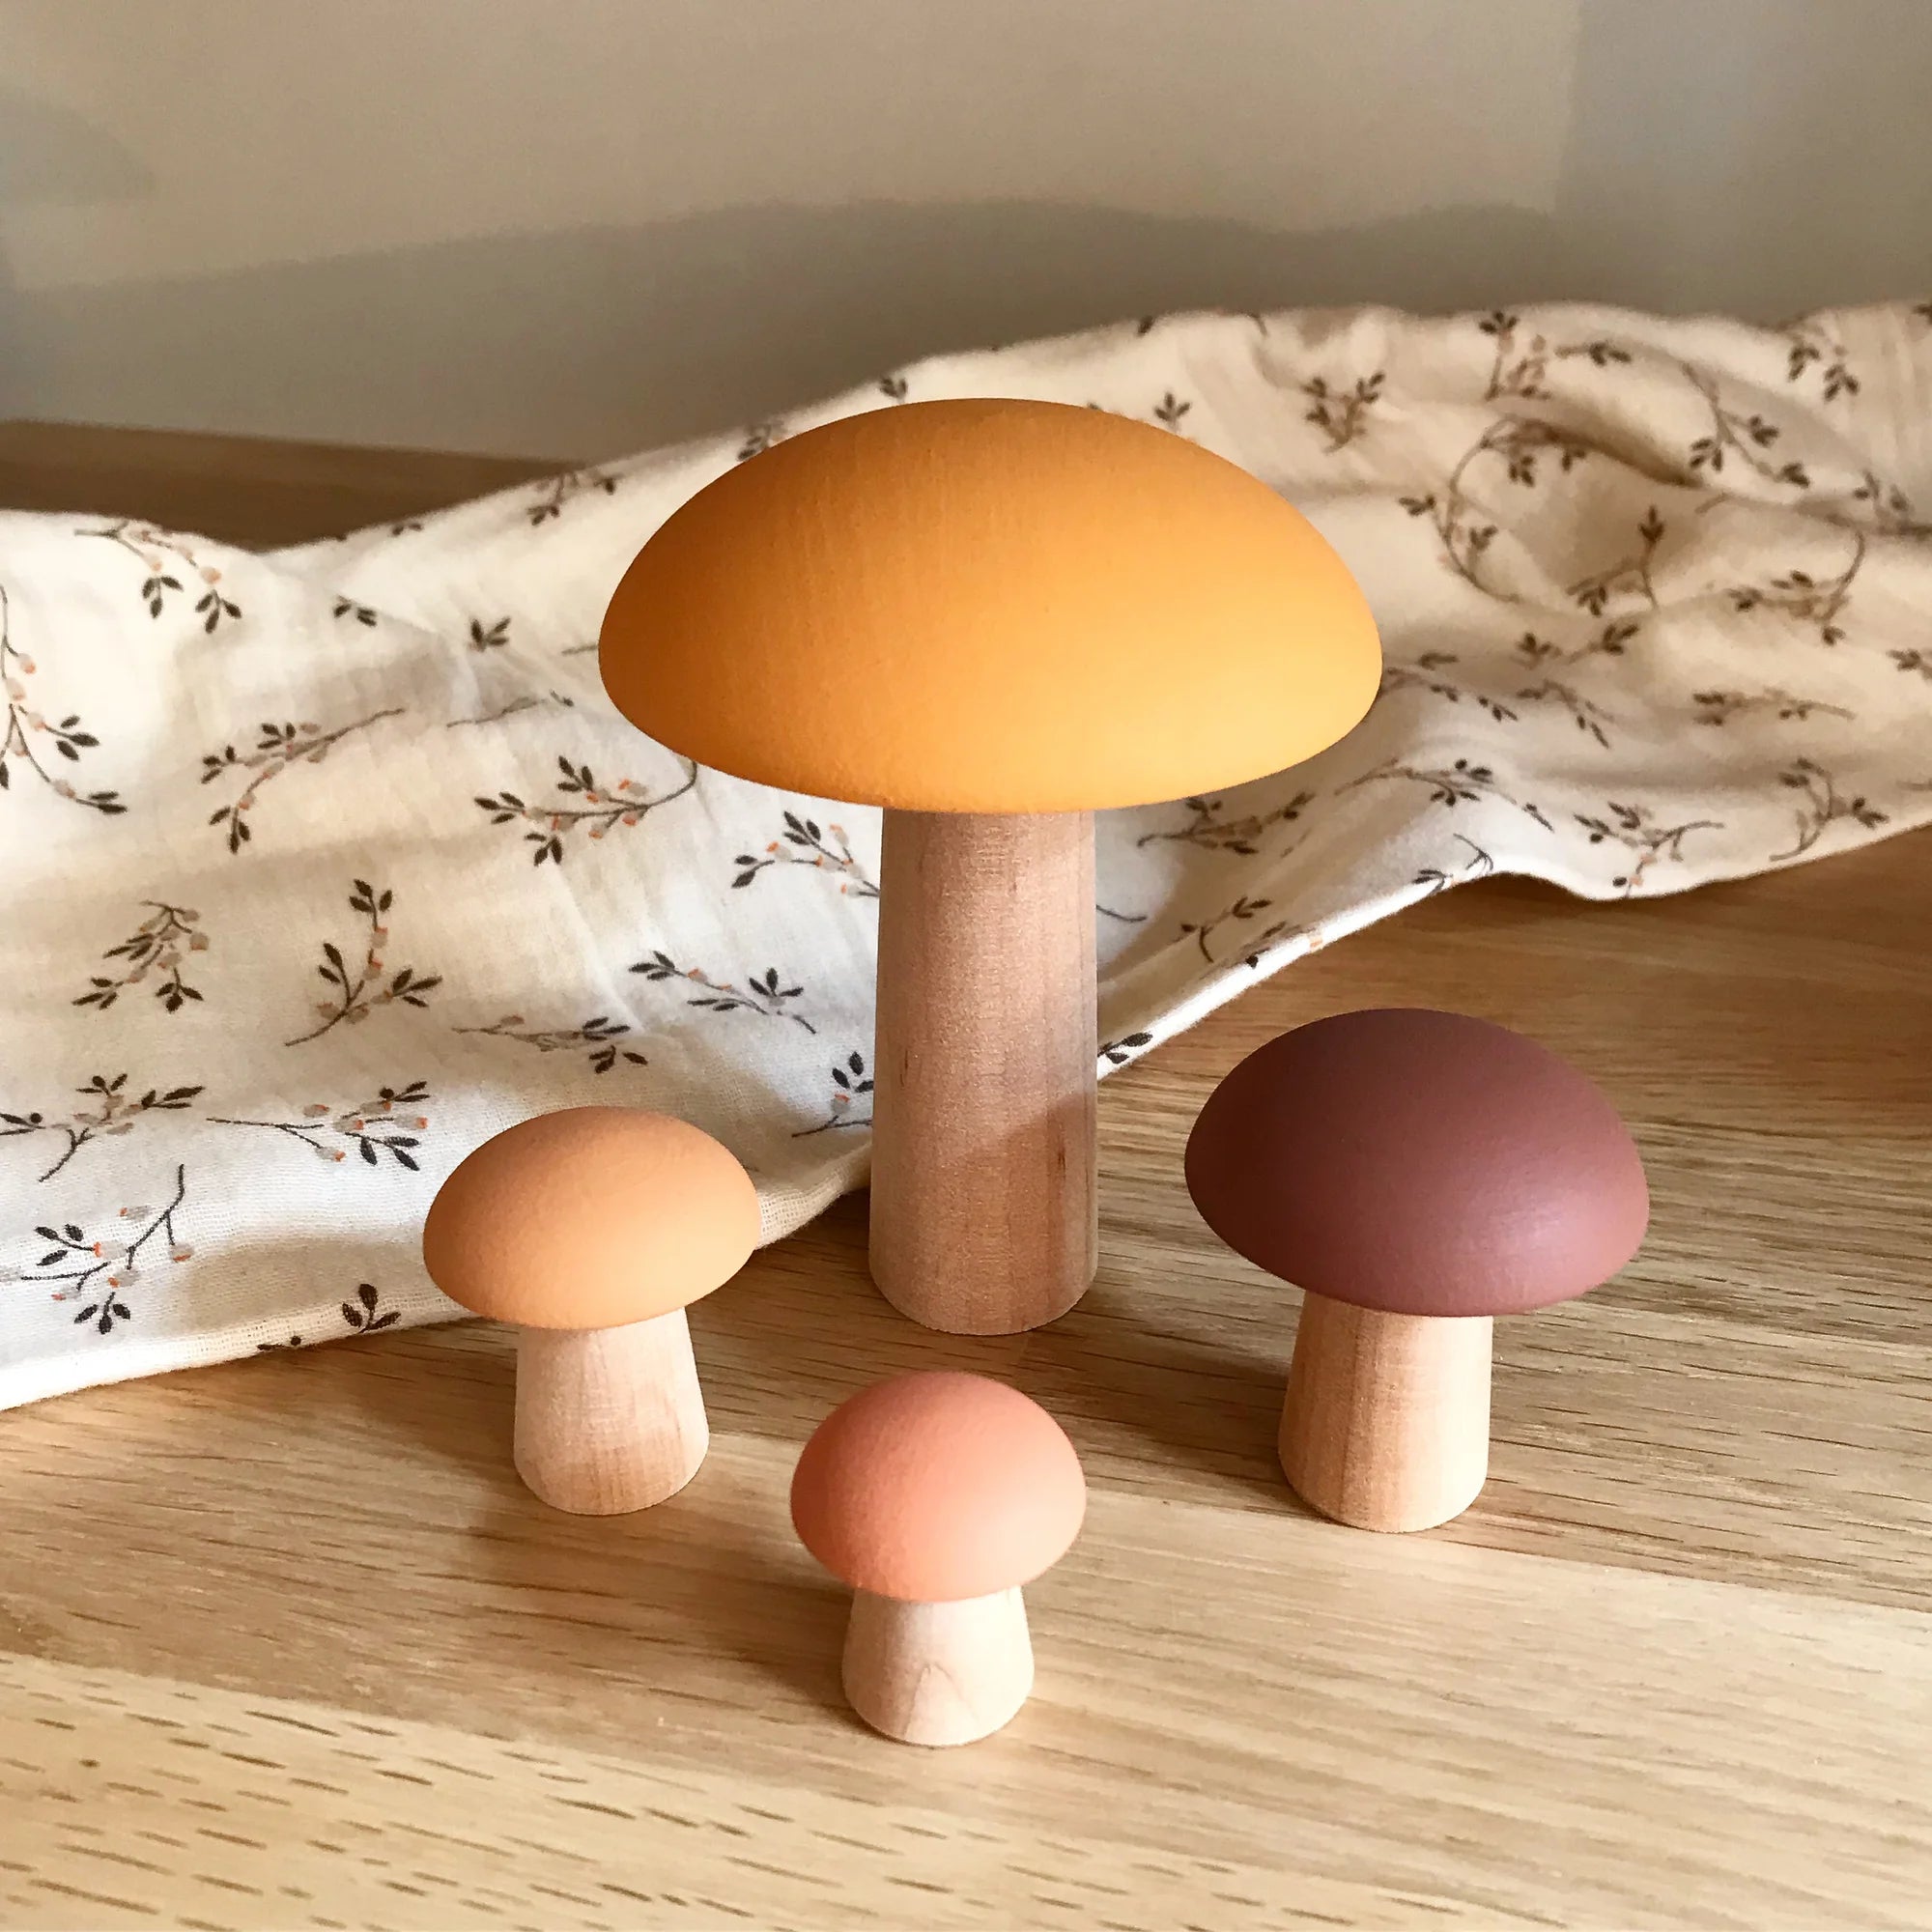 Mushrooms in the Woods - Autumn